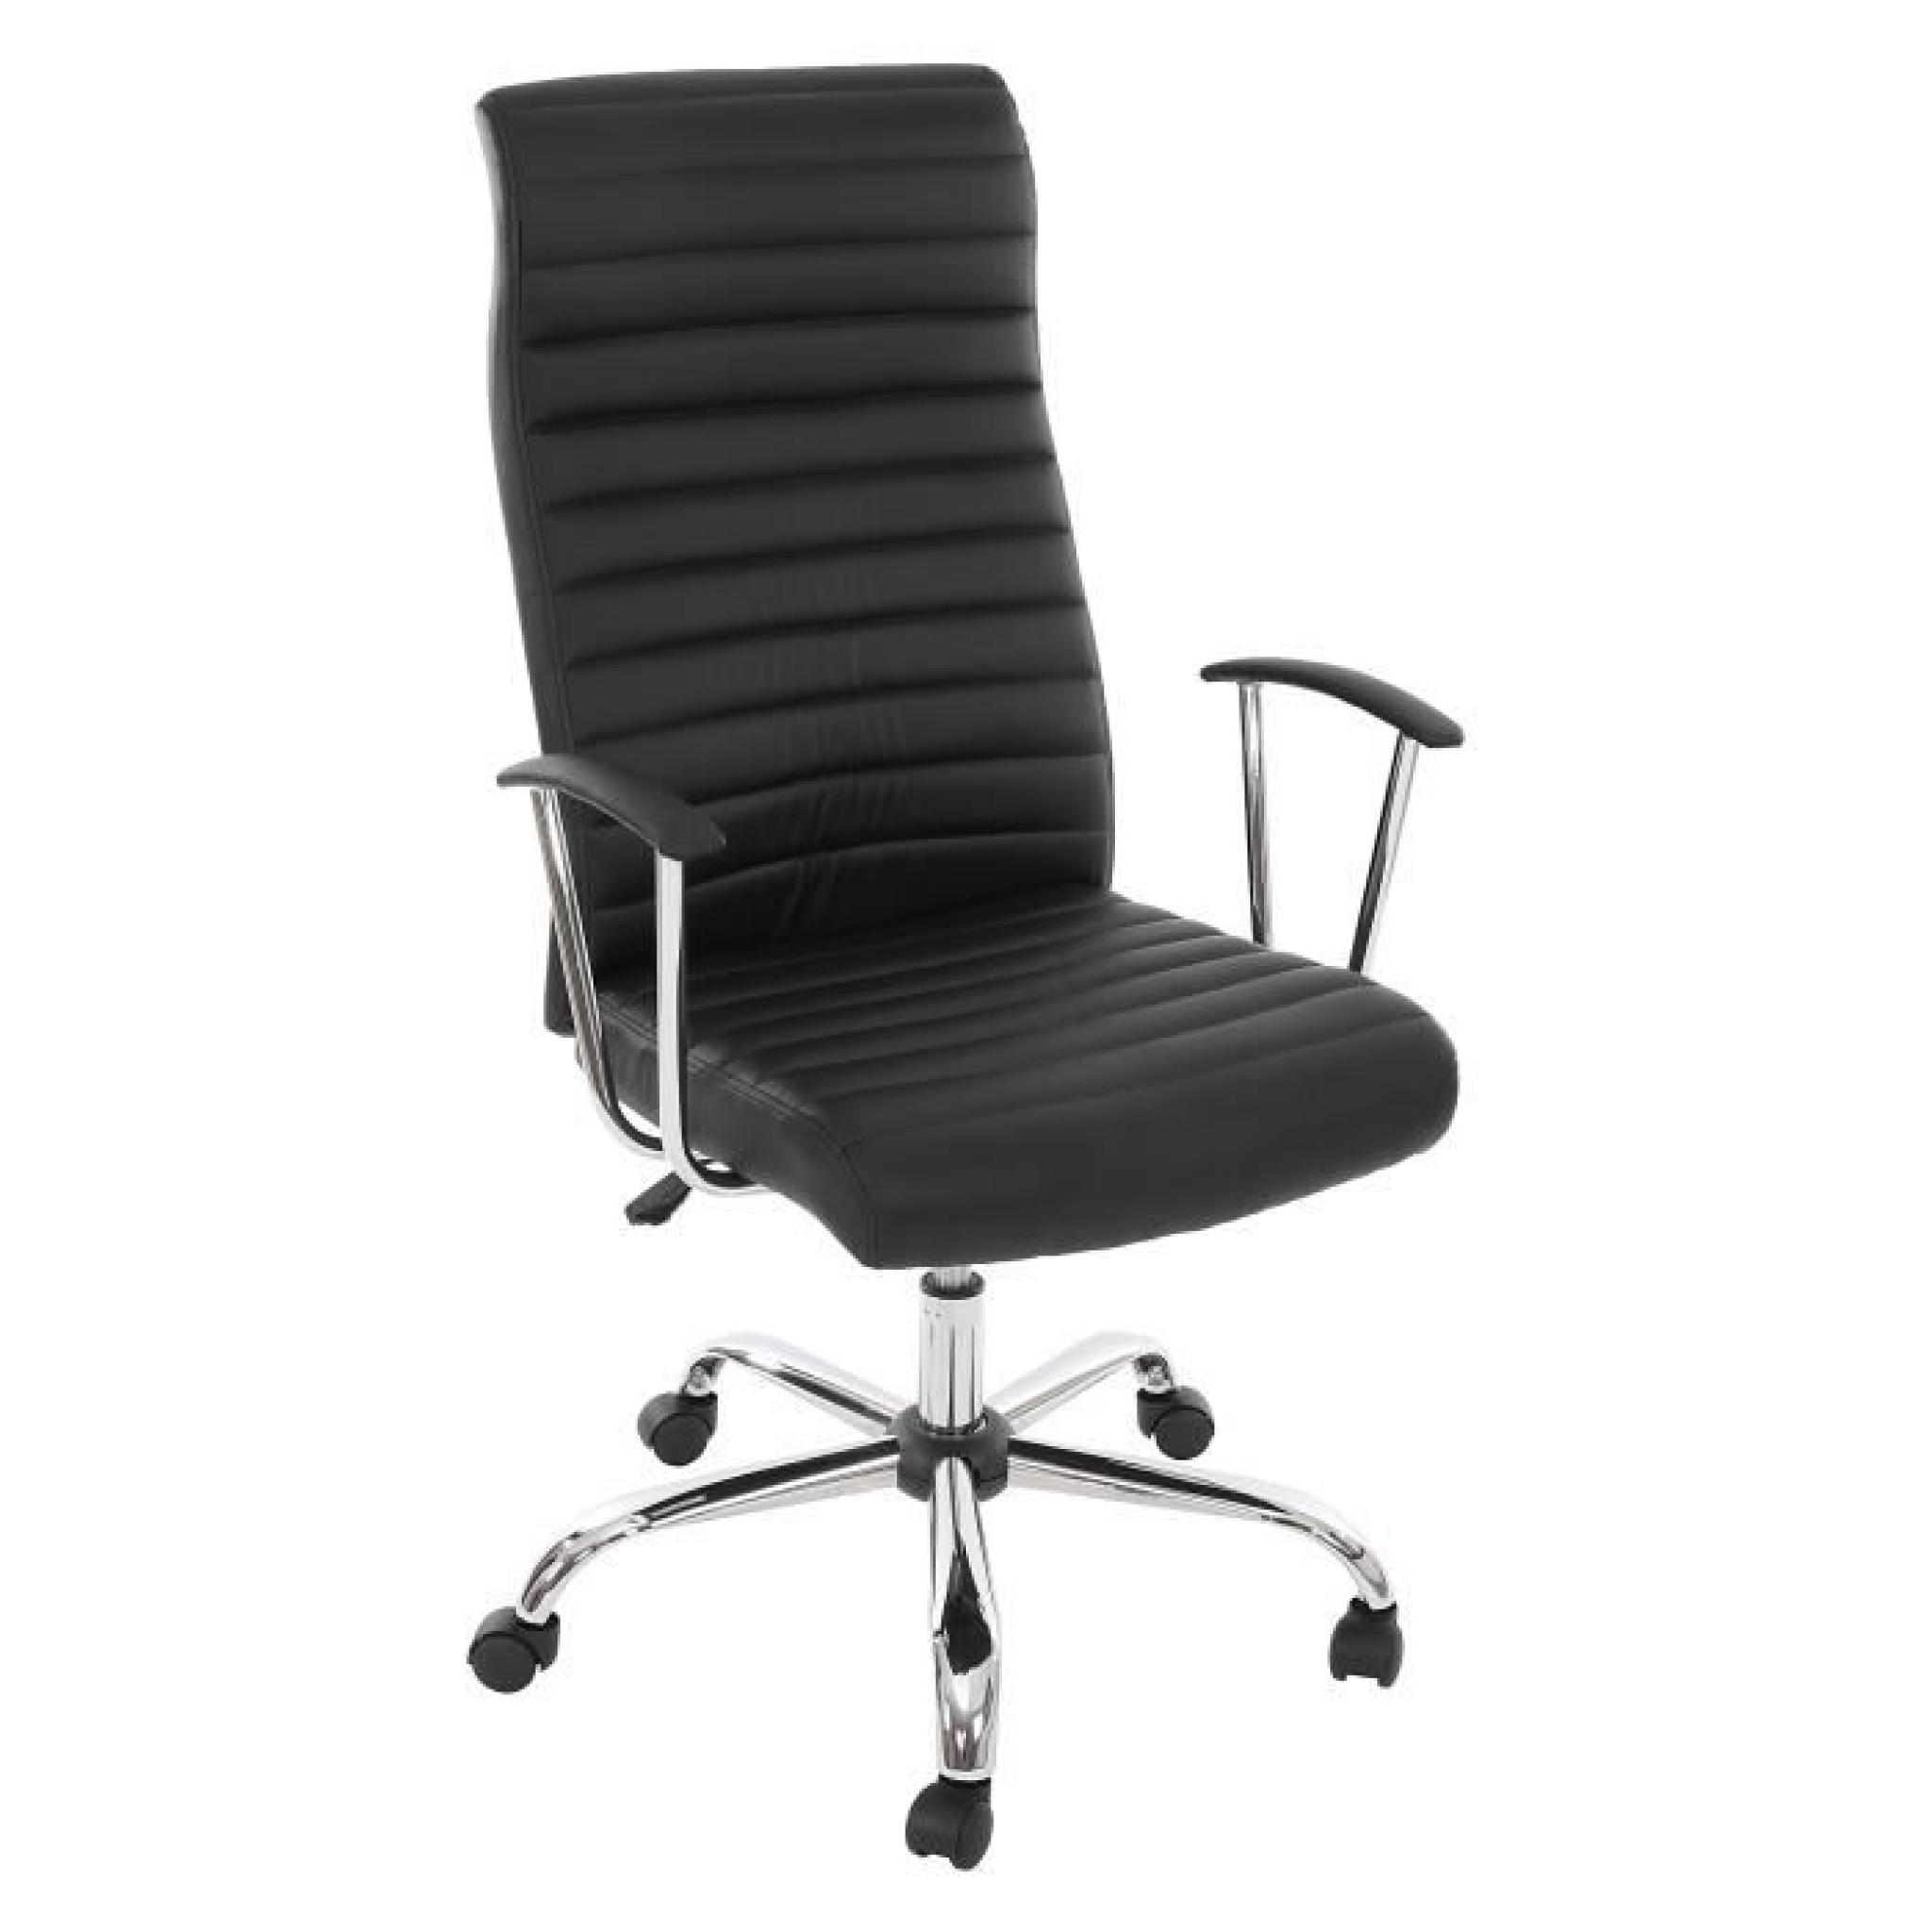  Chaise de bureau pivotant , forme ergonomique ~ noir